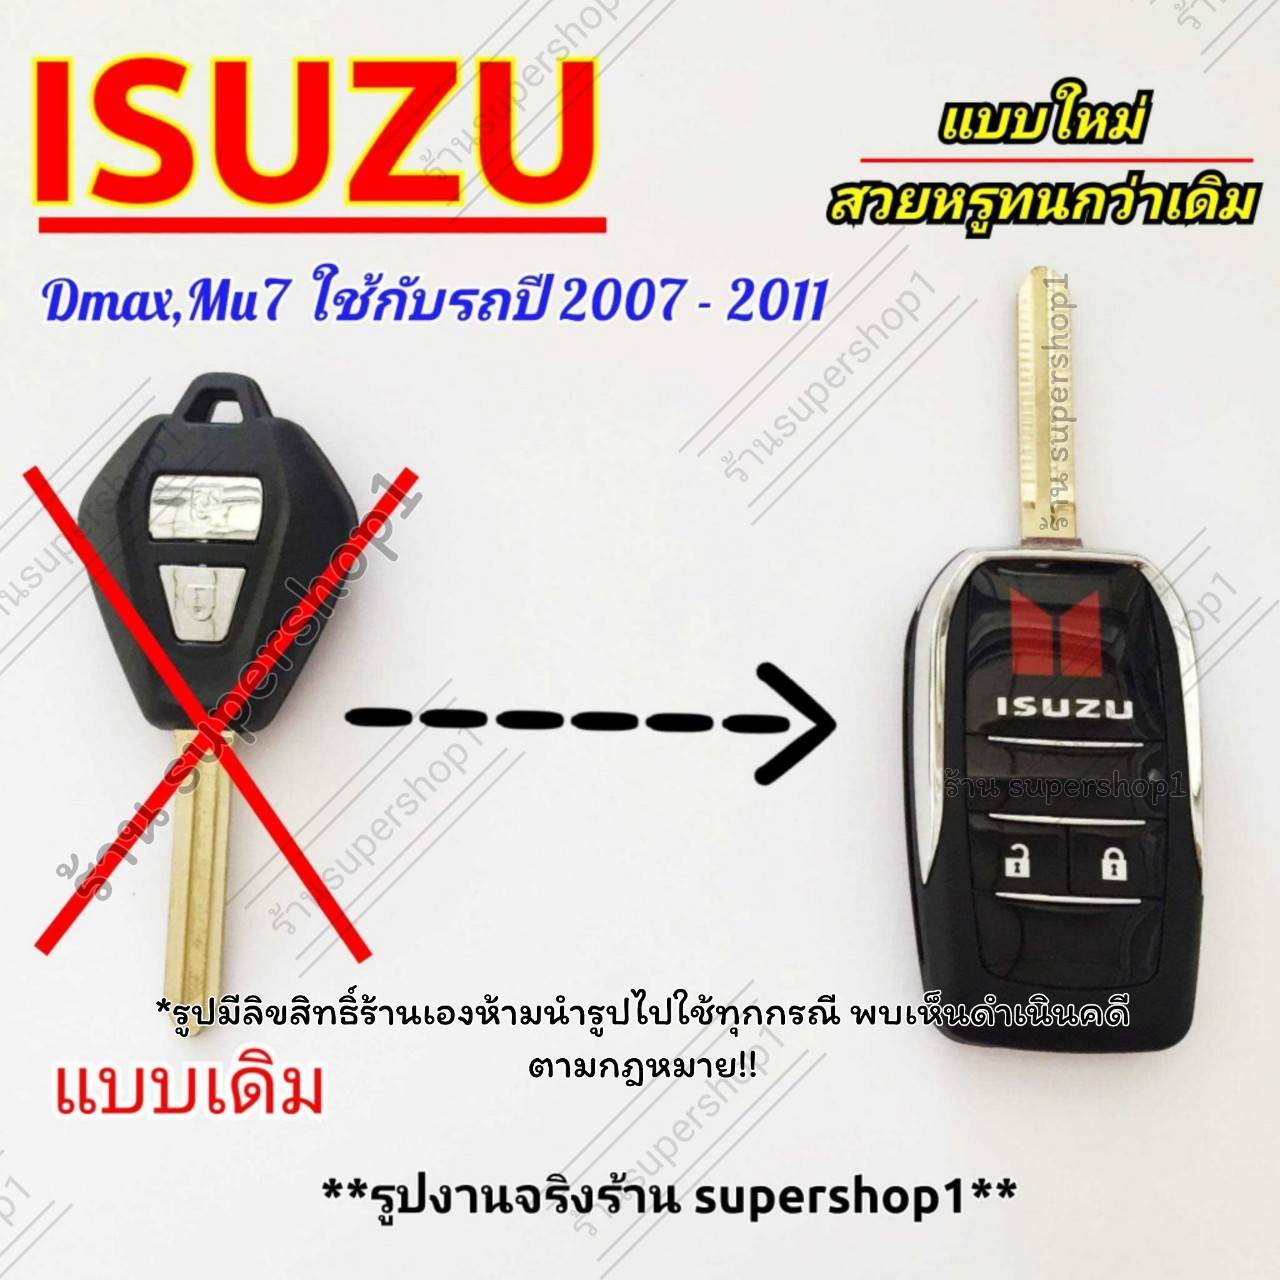 กรอบกุญแจพับเก็บก้านได้ Isuzu Dmax Mu7 ปีที่ใช้2007-2011 (( Isu3))